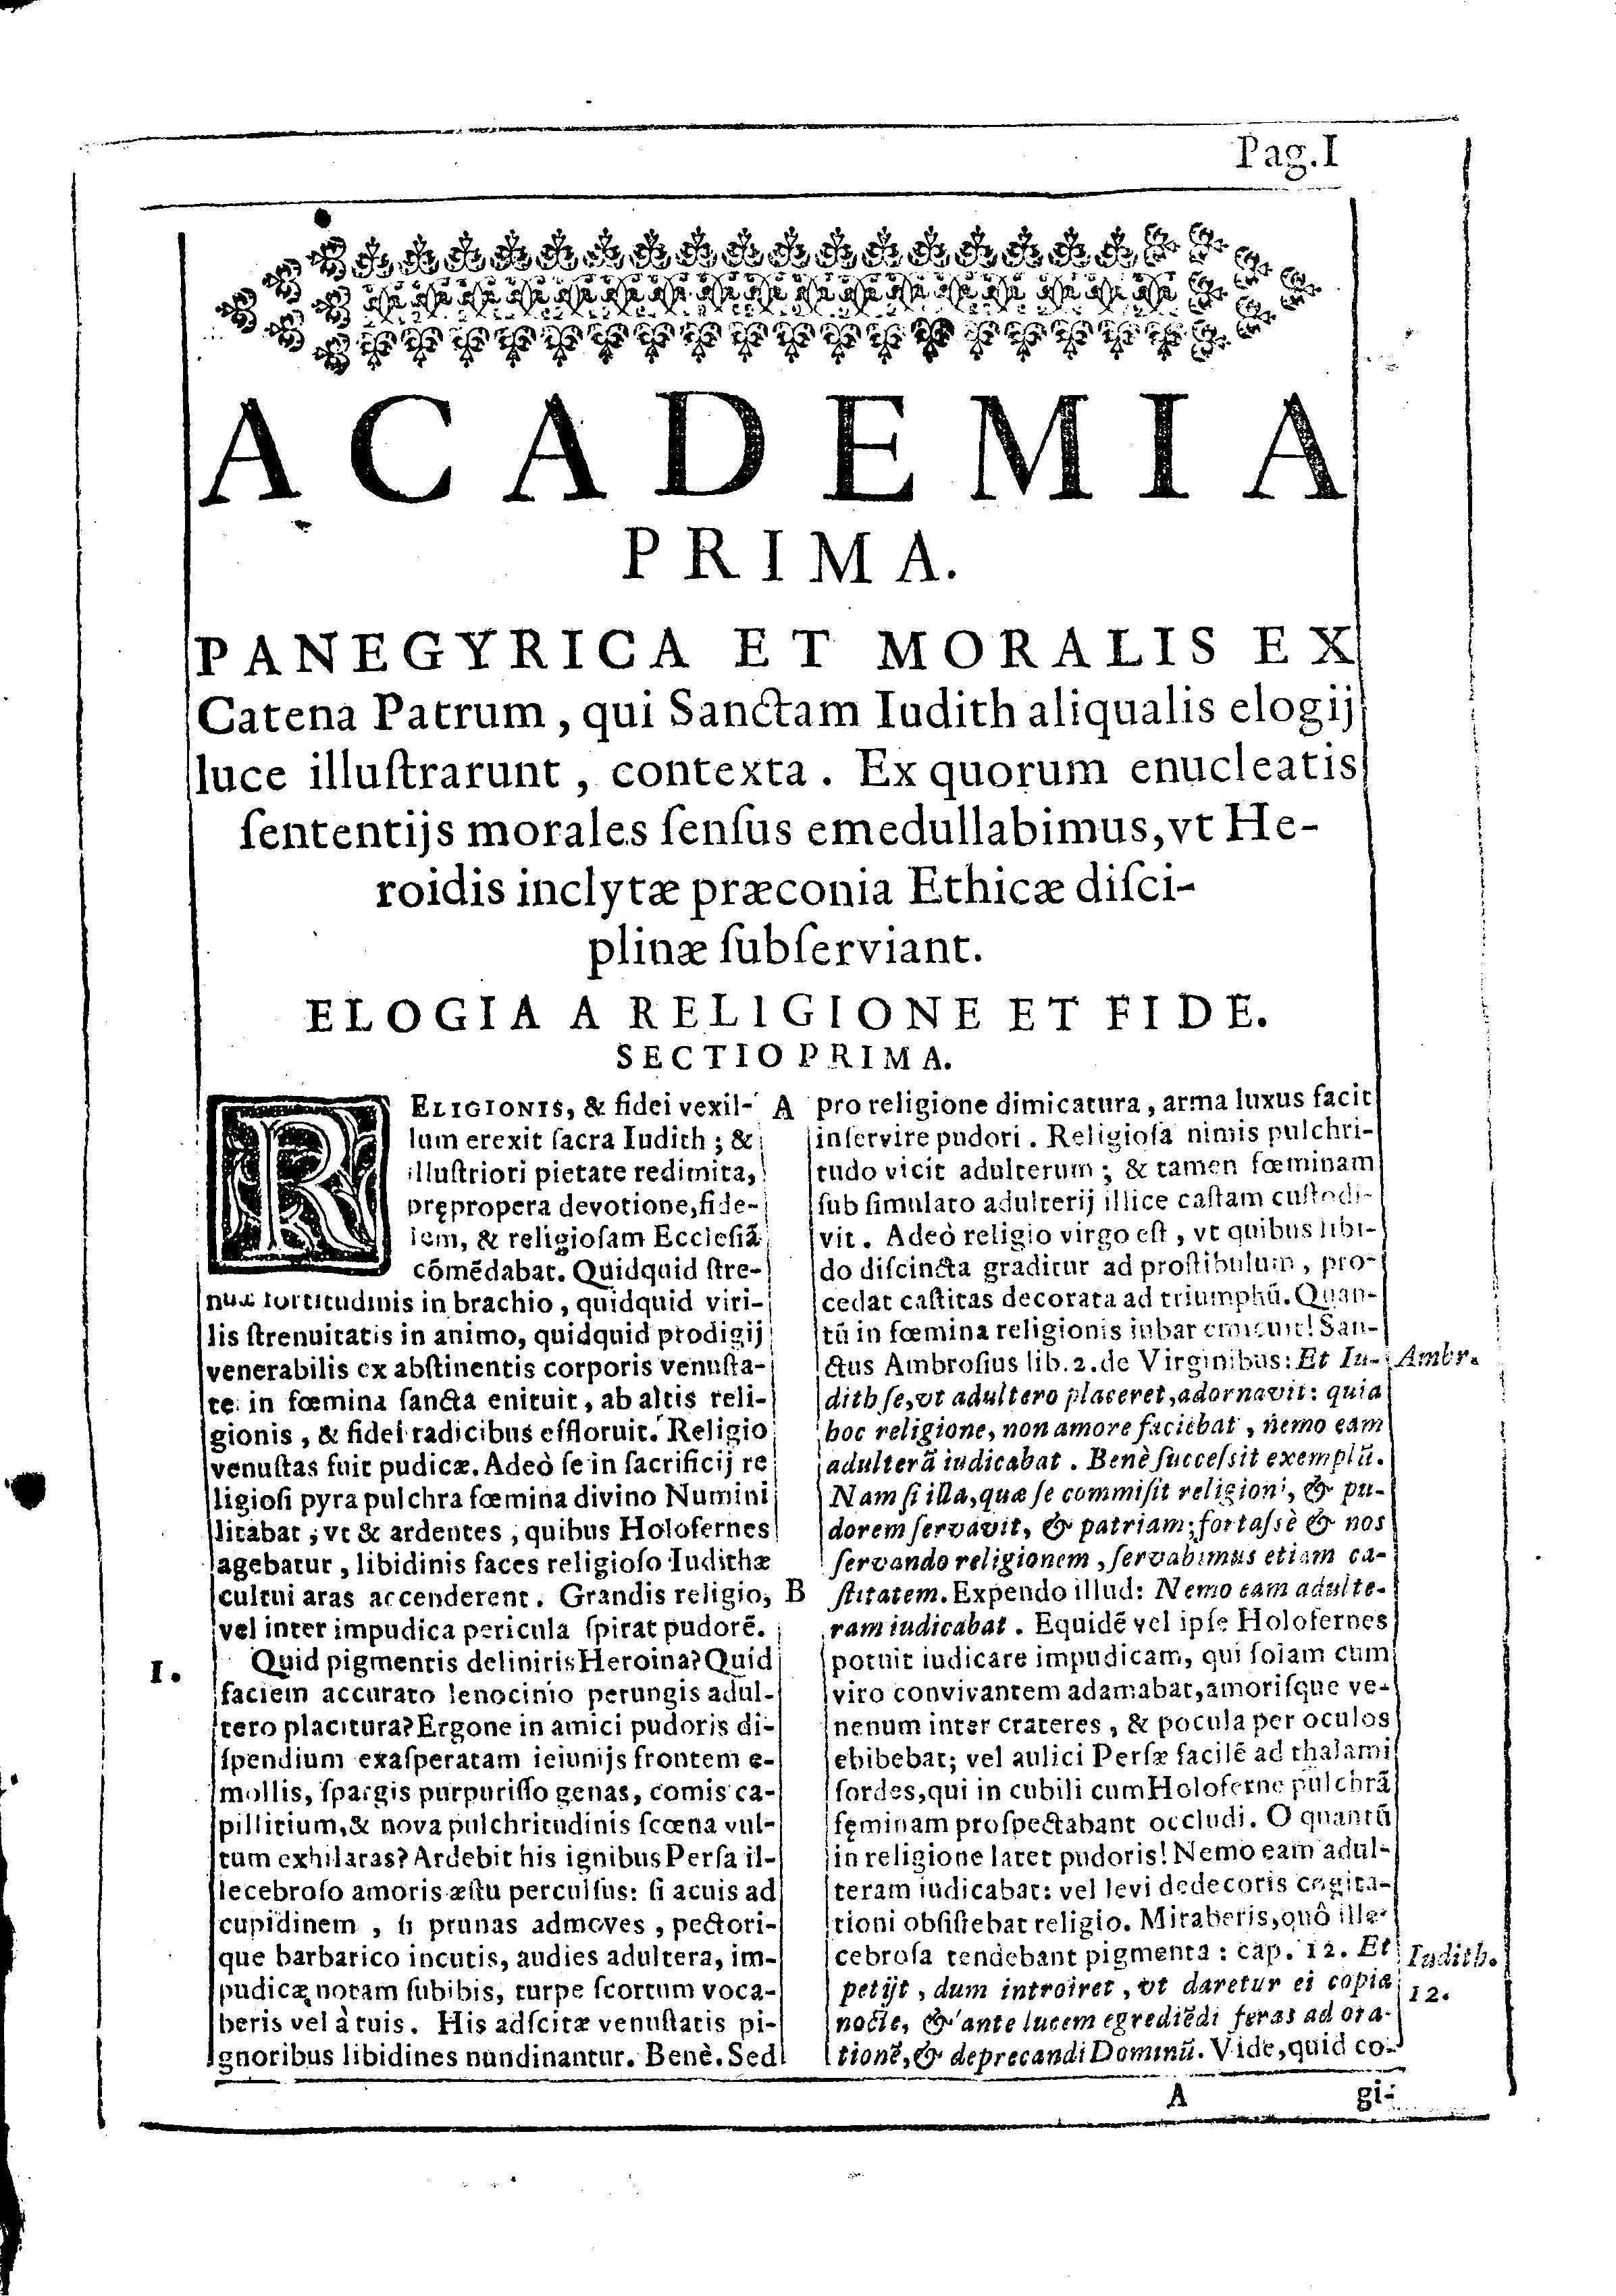 Academia prima. Panegyrica et moralis ex Catena Patrum  